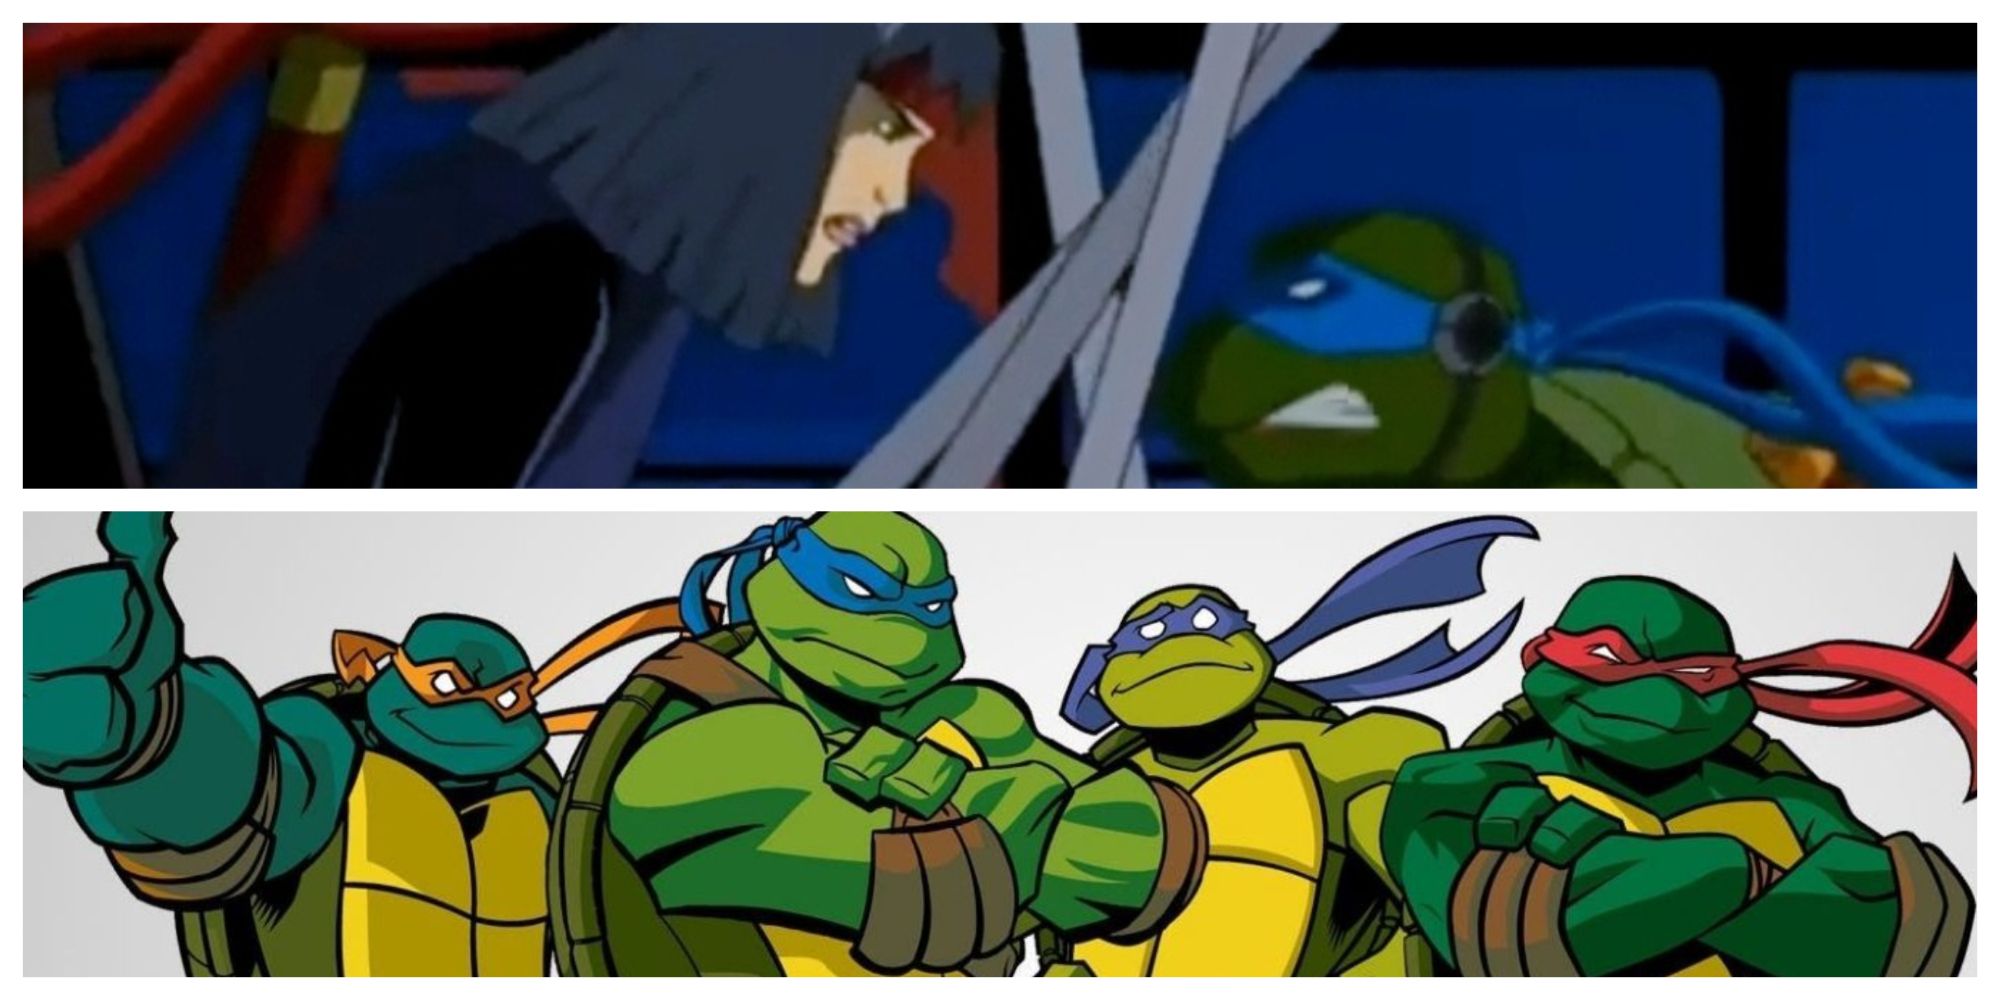 5 Reasons The 2003 Teenage Mutant Ninja Turtles Cartoon Is Awesome